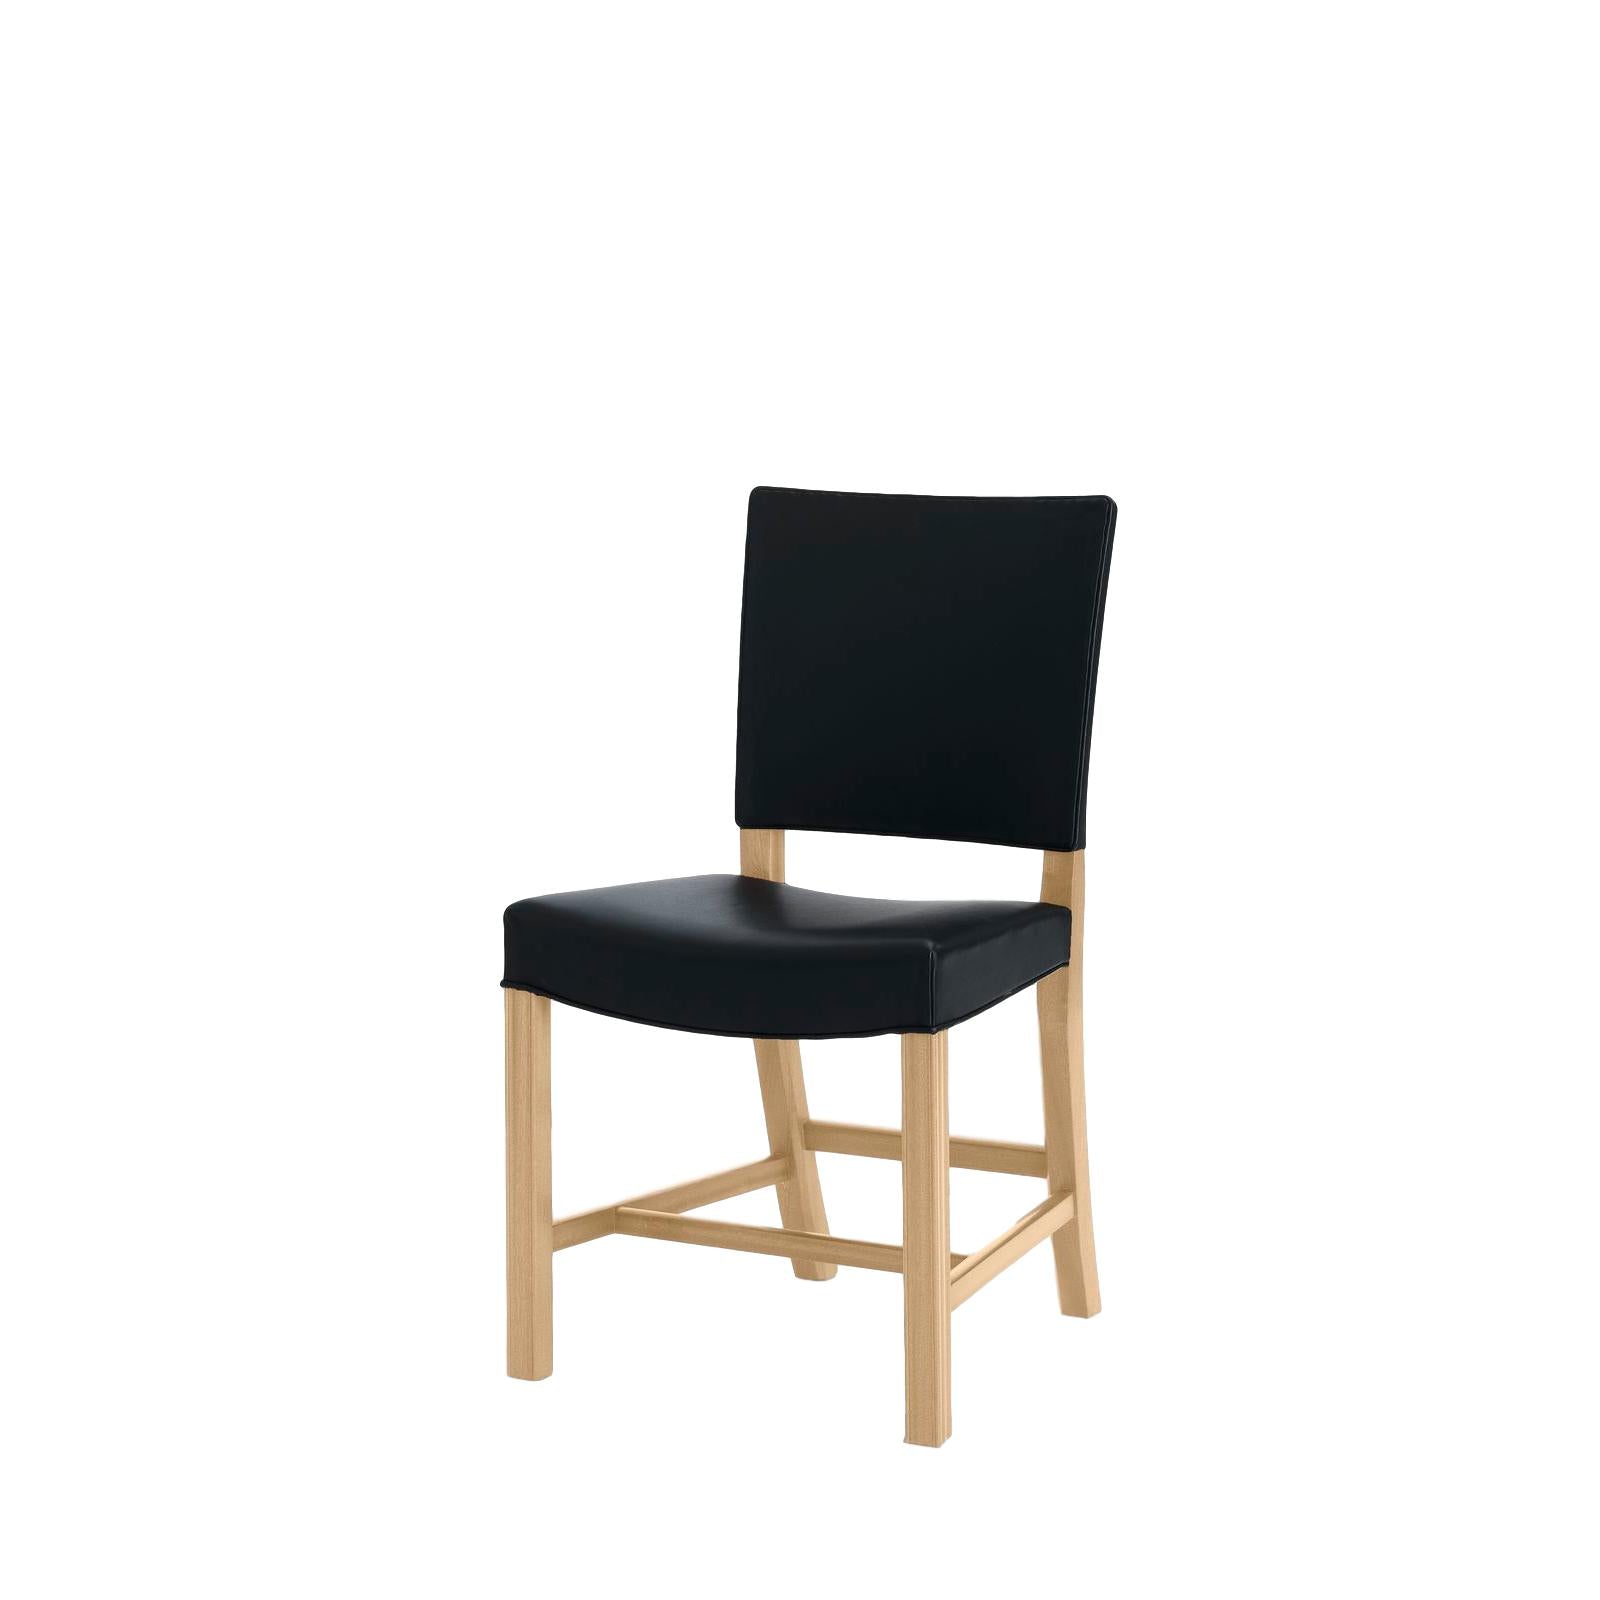 Carl Hansen Den röda stolen, 58 cm